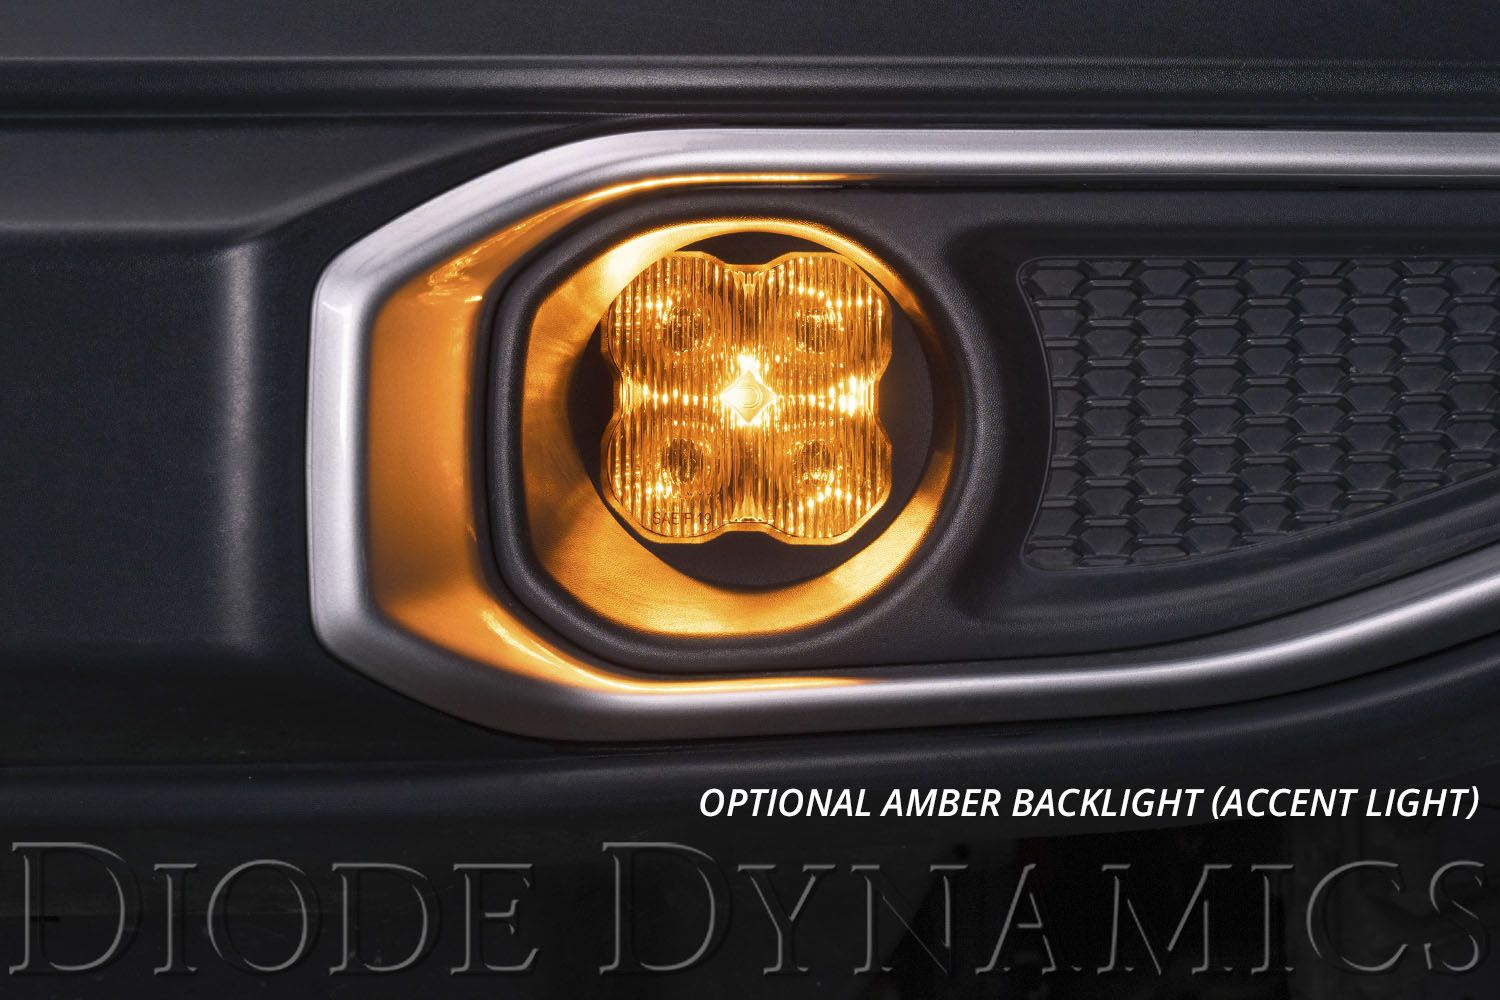 SS3 LED Fog Light Kit for 2013-2015 Honda Crosstour Diode Dynamics-